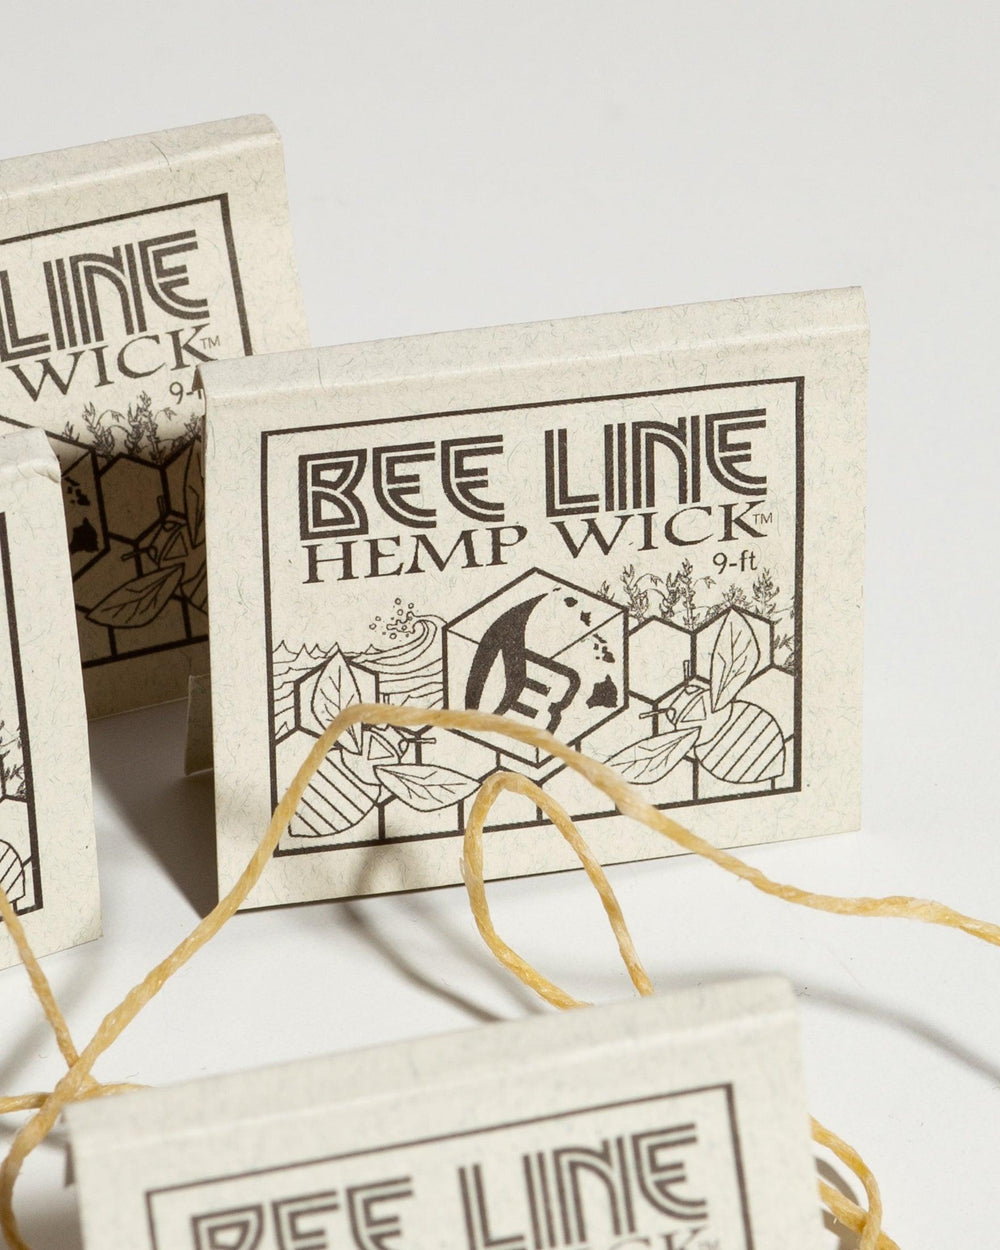 Bee Line hemp wick package cover.